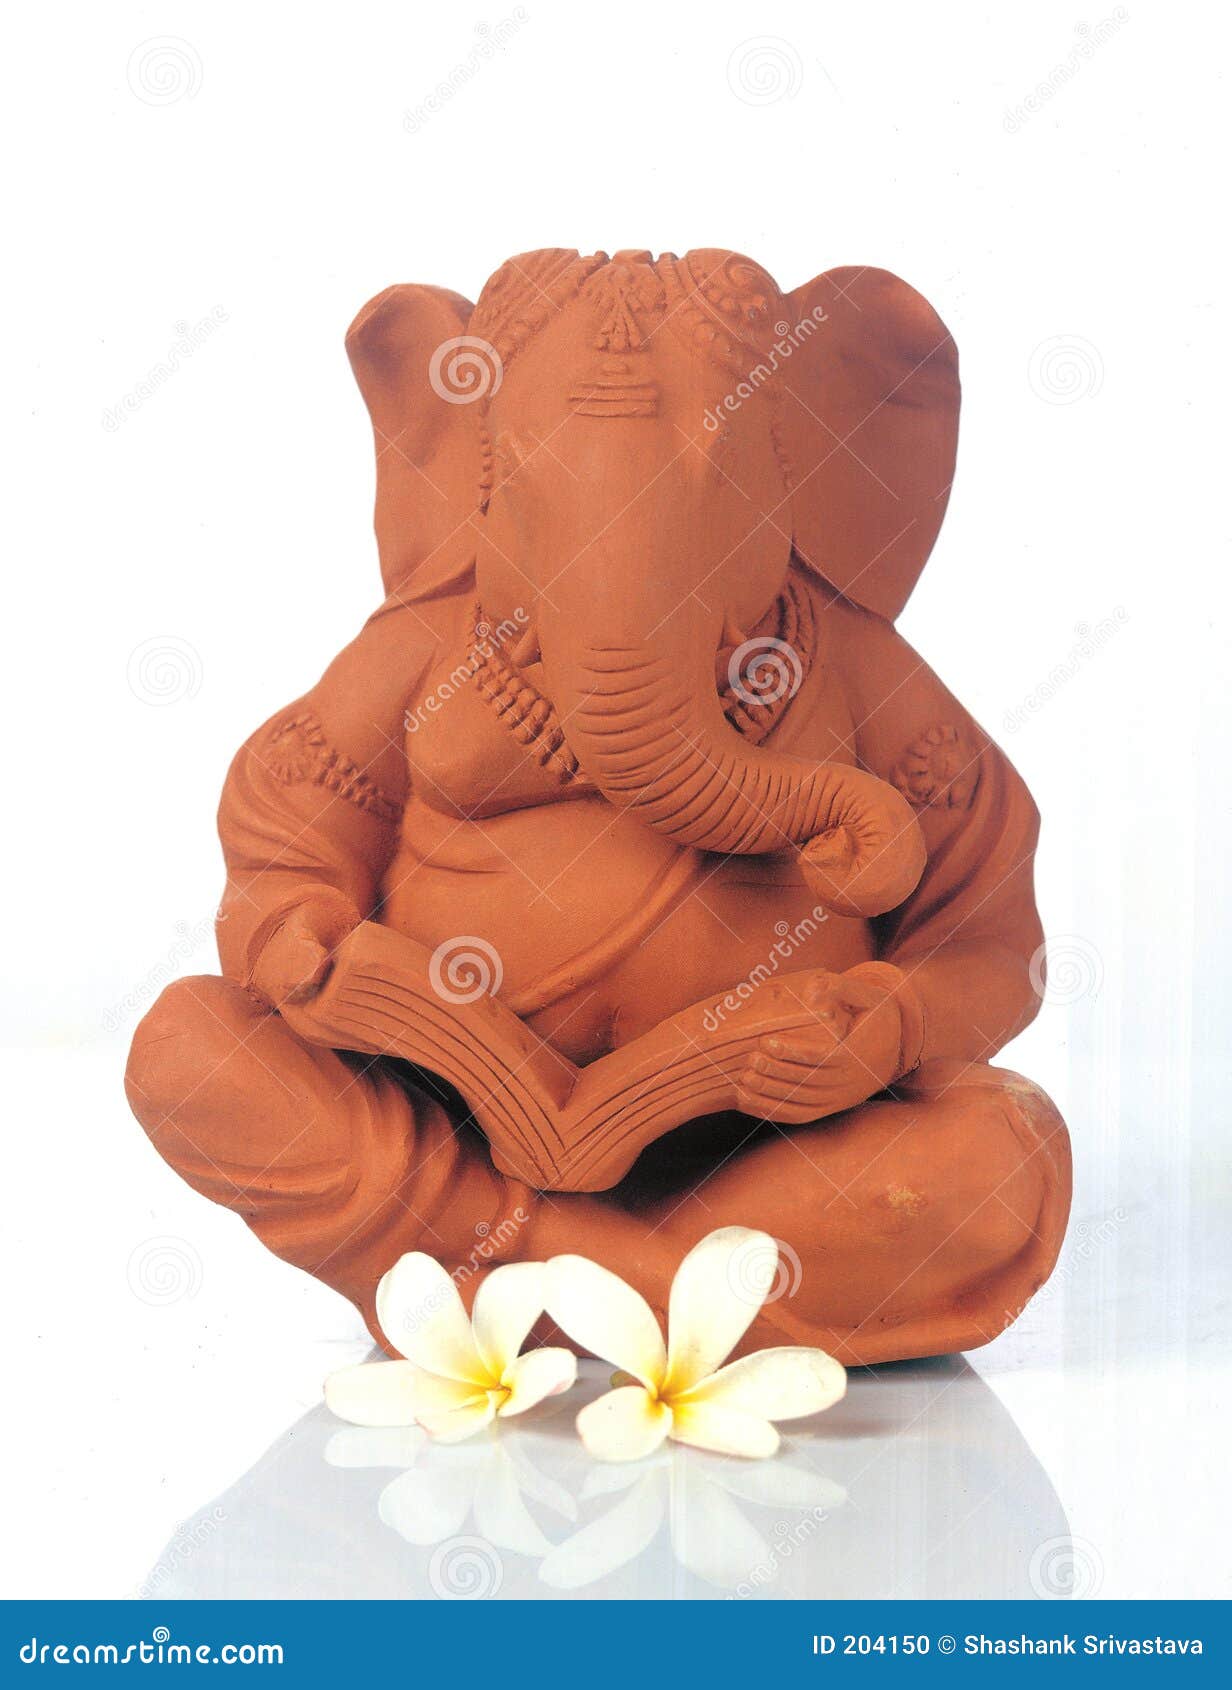 Seigneur Ganesh - Dieu de la bonne chance. Son un idole de Dieu indou, seigneur Ganesha, vénéré comme Dieu de la sagesse et de la connaissance. Handicrafted hors de boue spéciale. Le métier connu sous le nom de terracota.